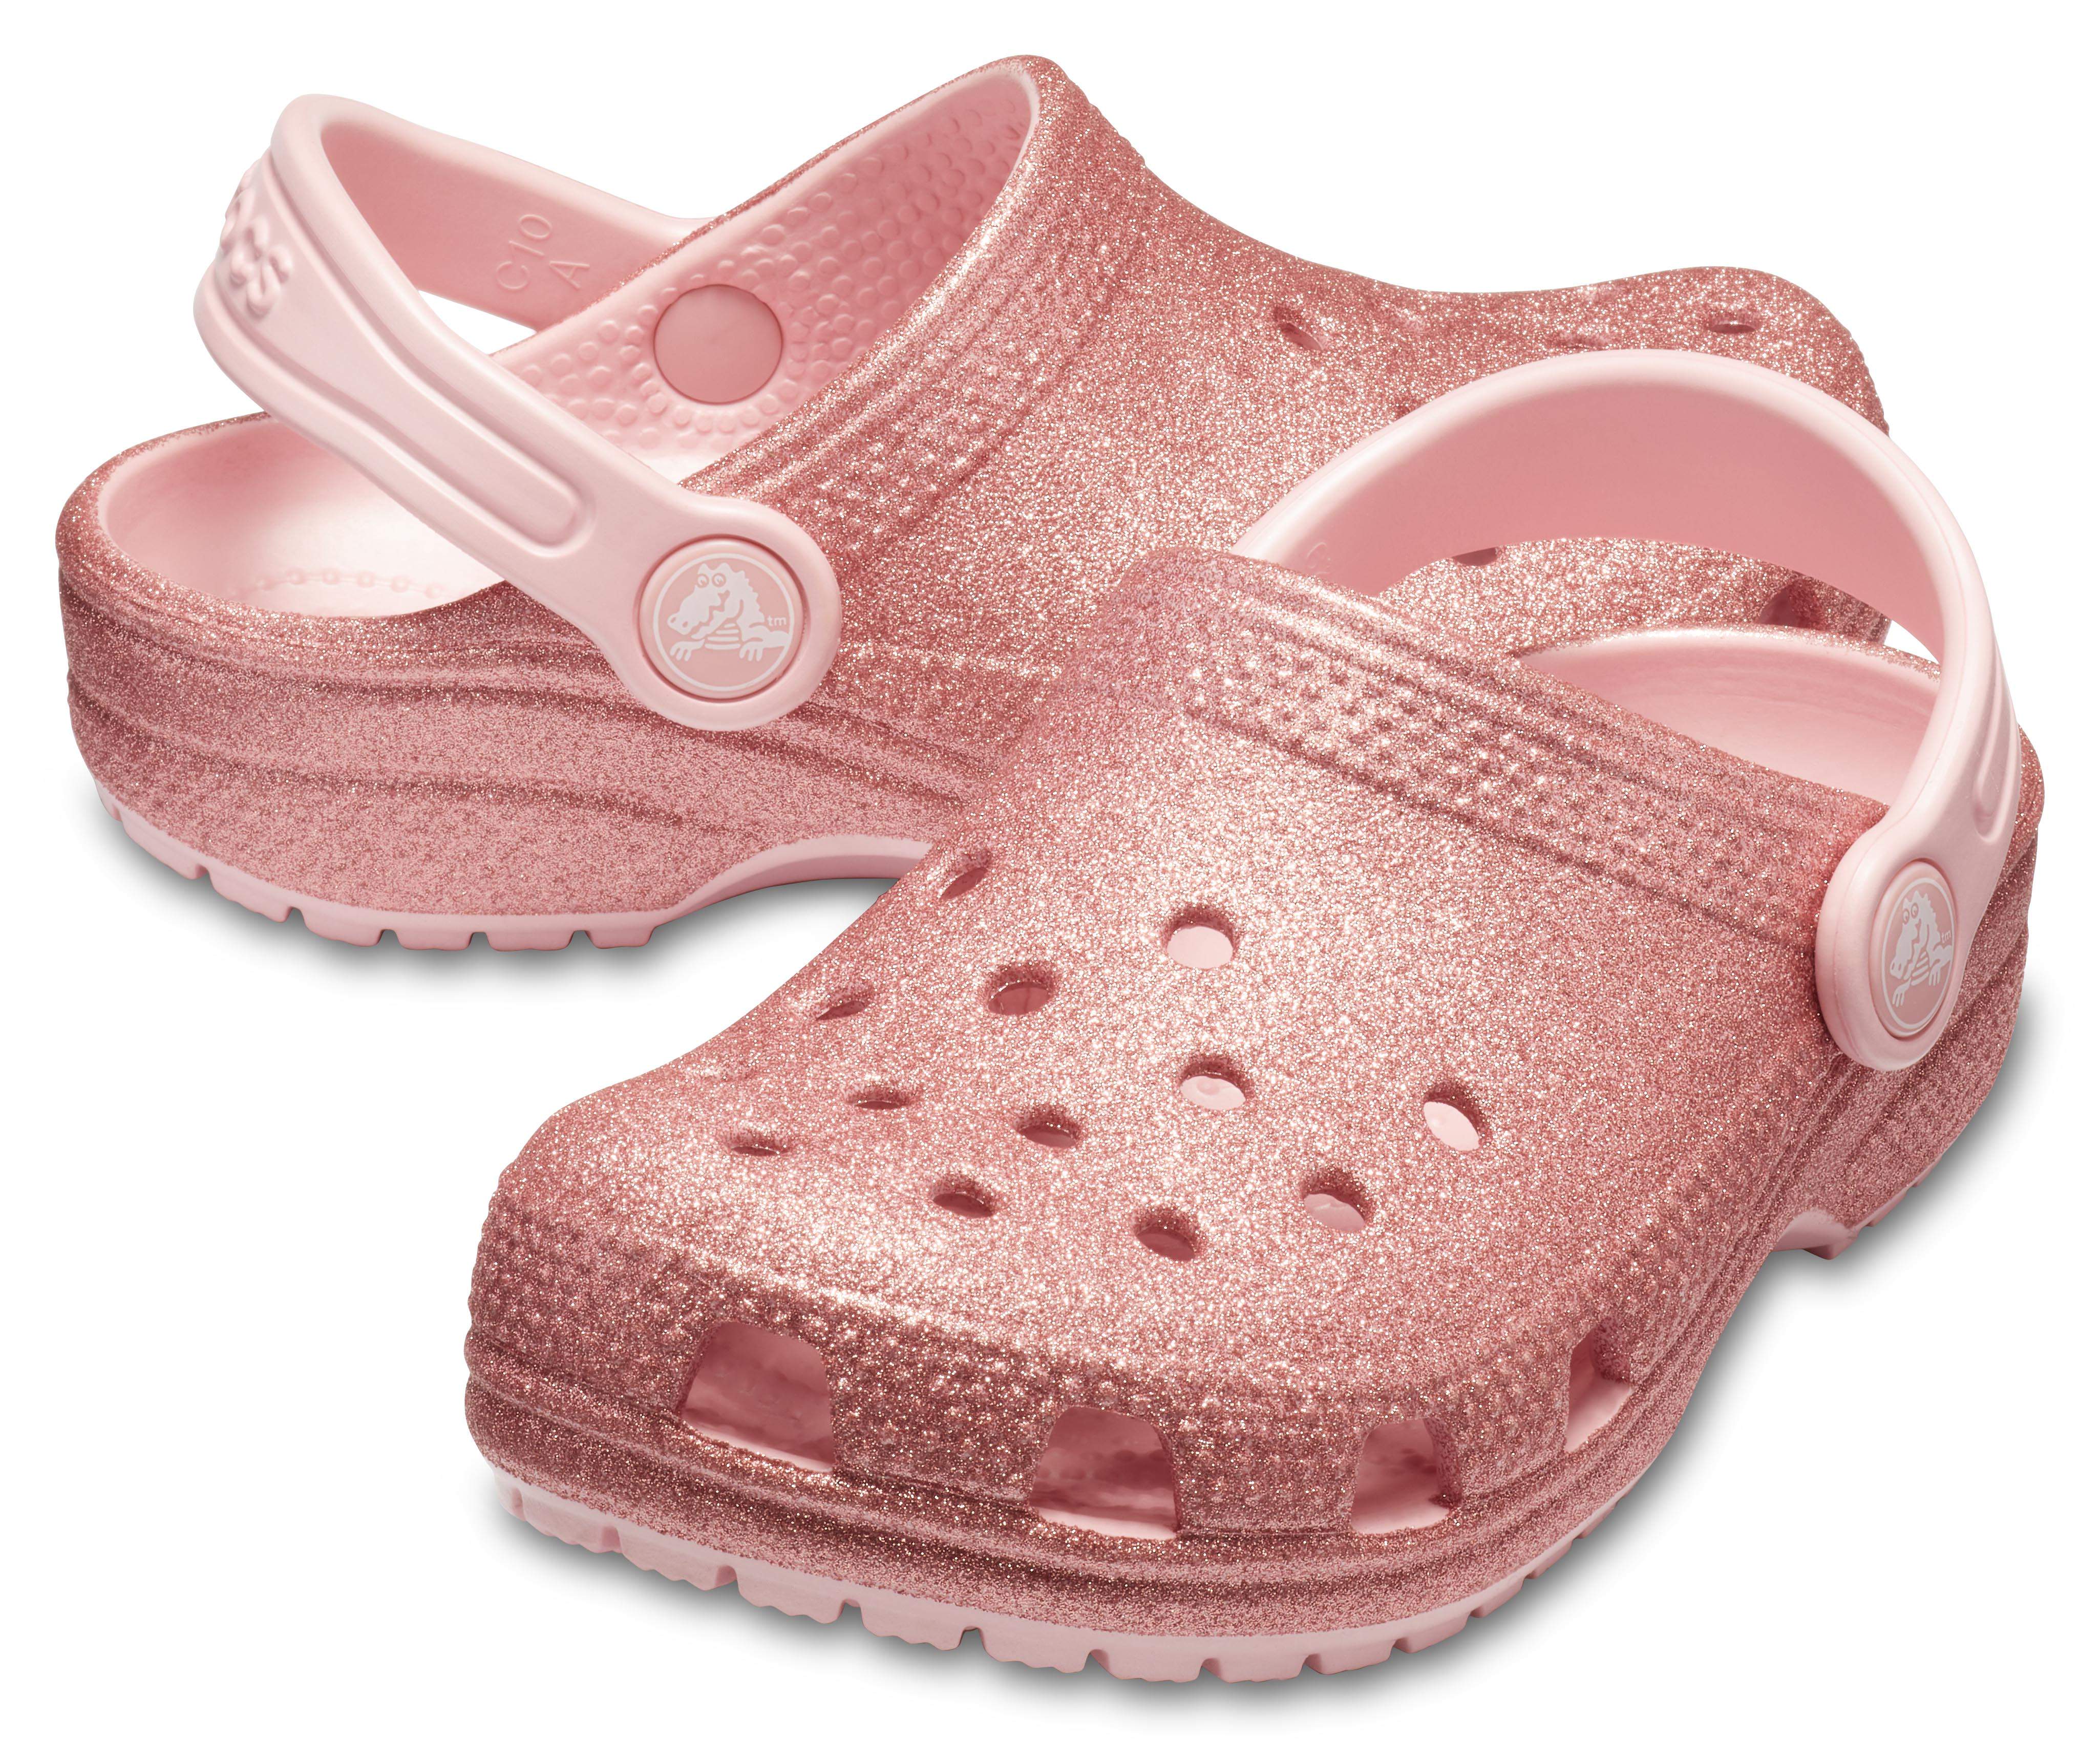 pink crocs size 11 mens